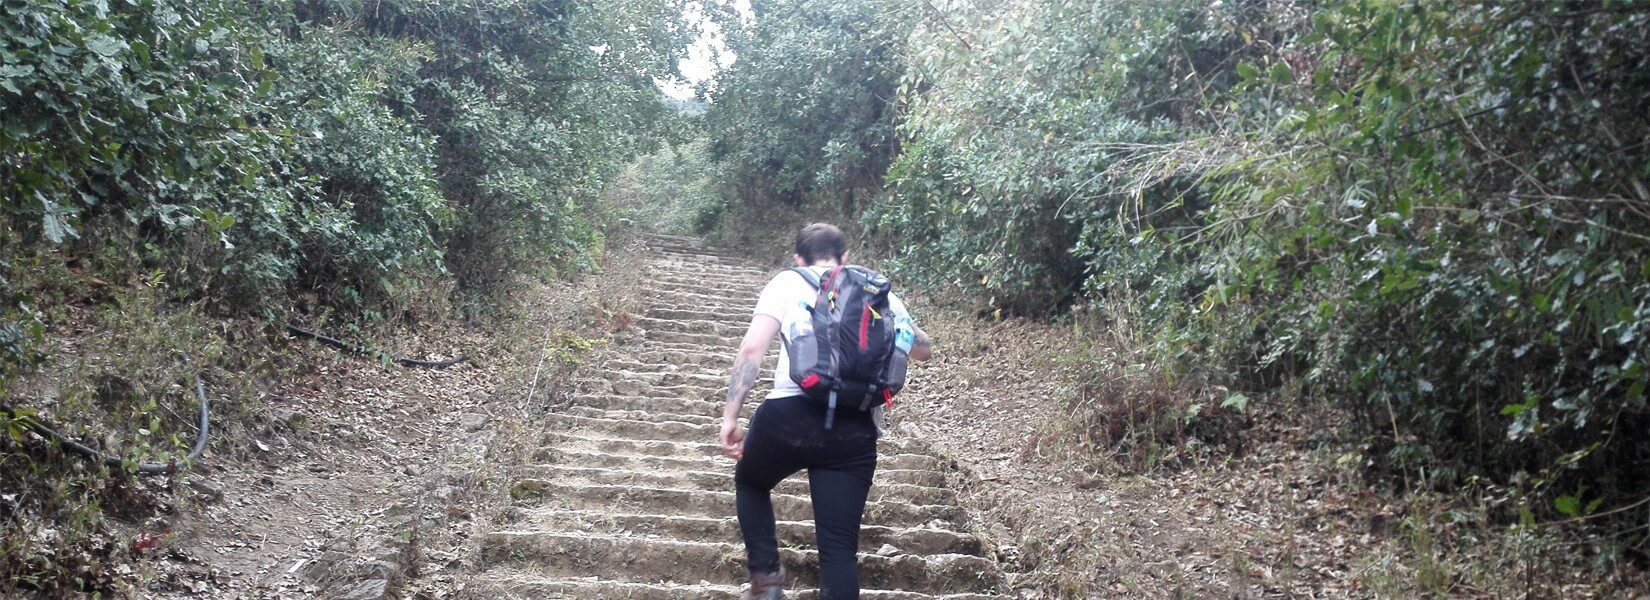 Chandragiri day hiking